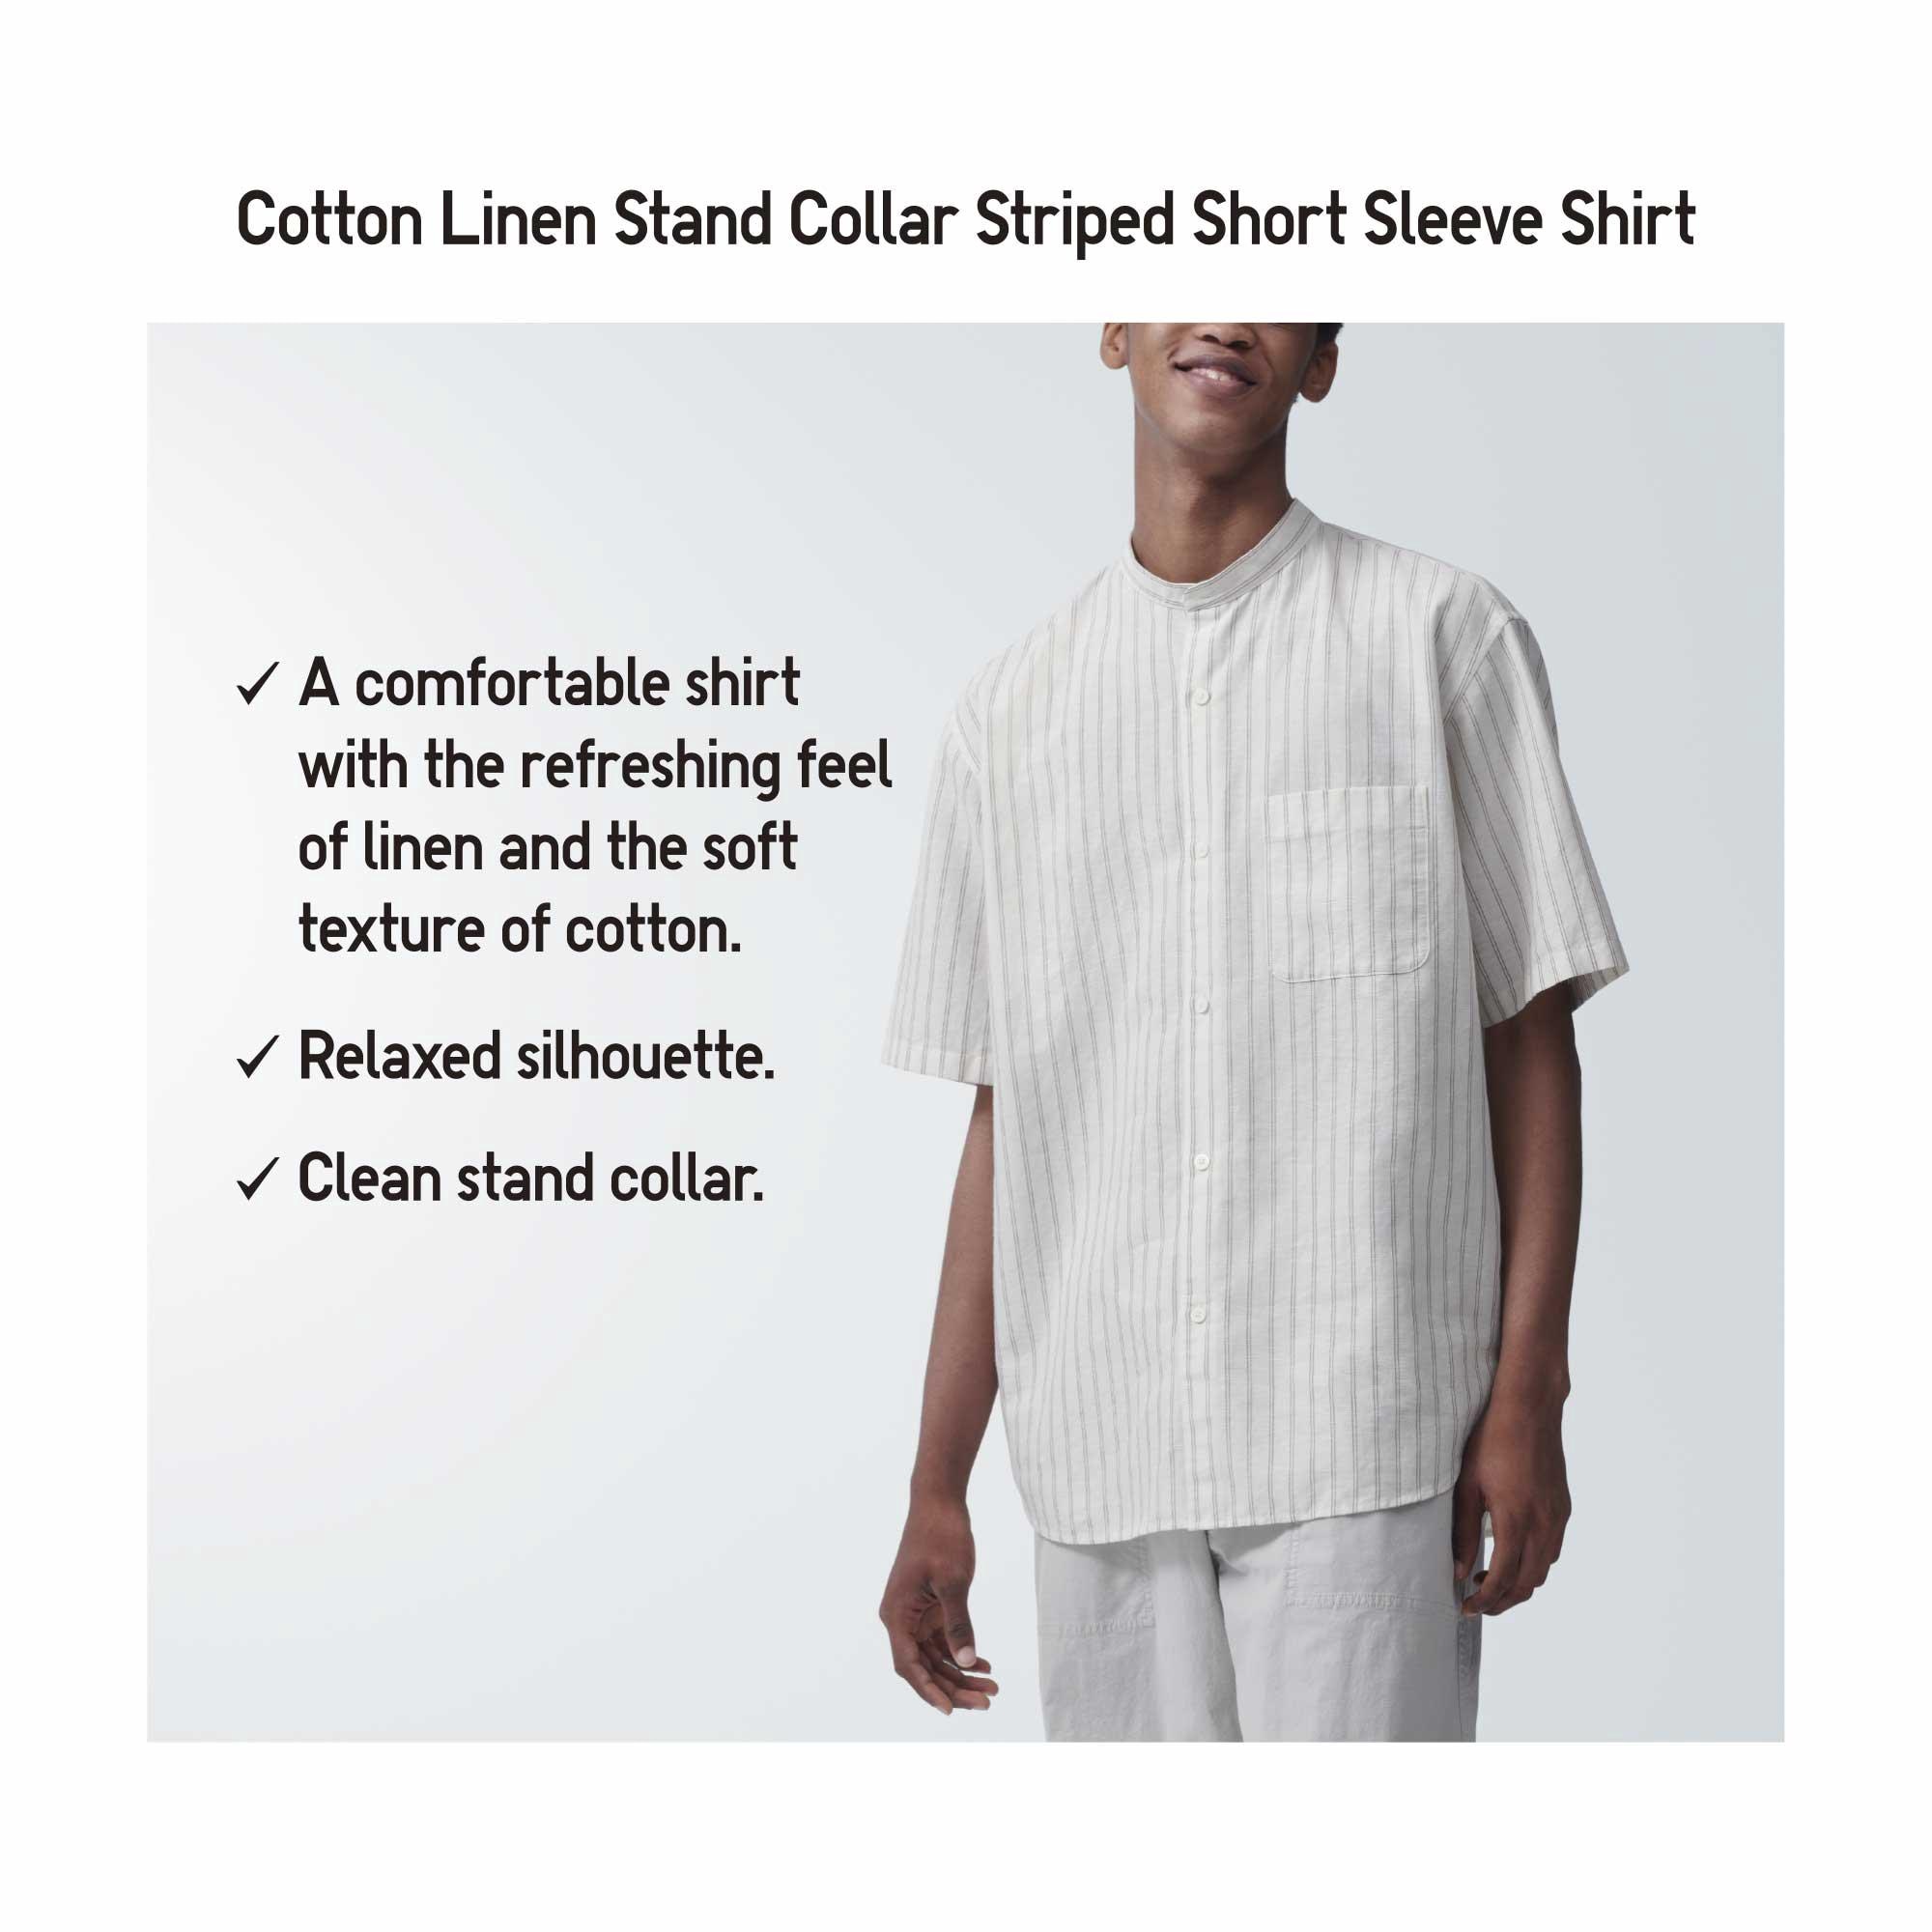 COTTON LINEN STAND COLLAR SHORT SLEEVE SHIRT